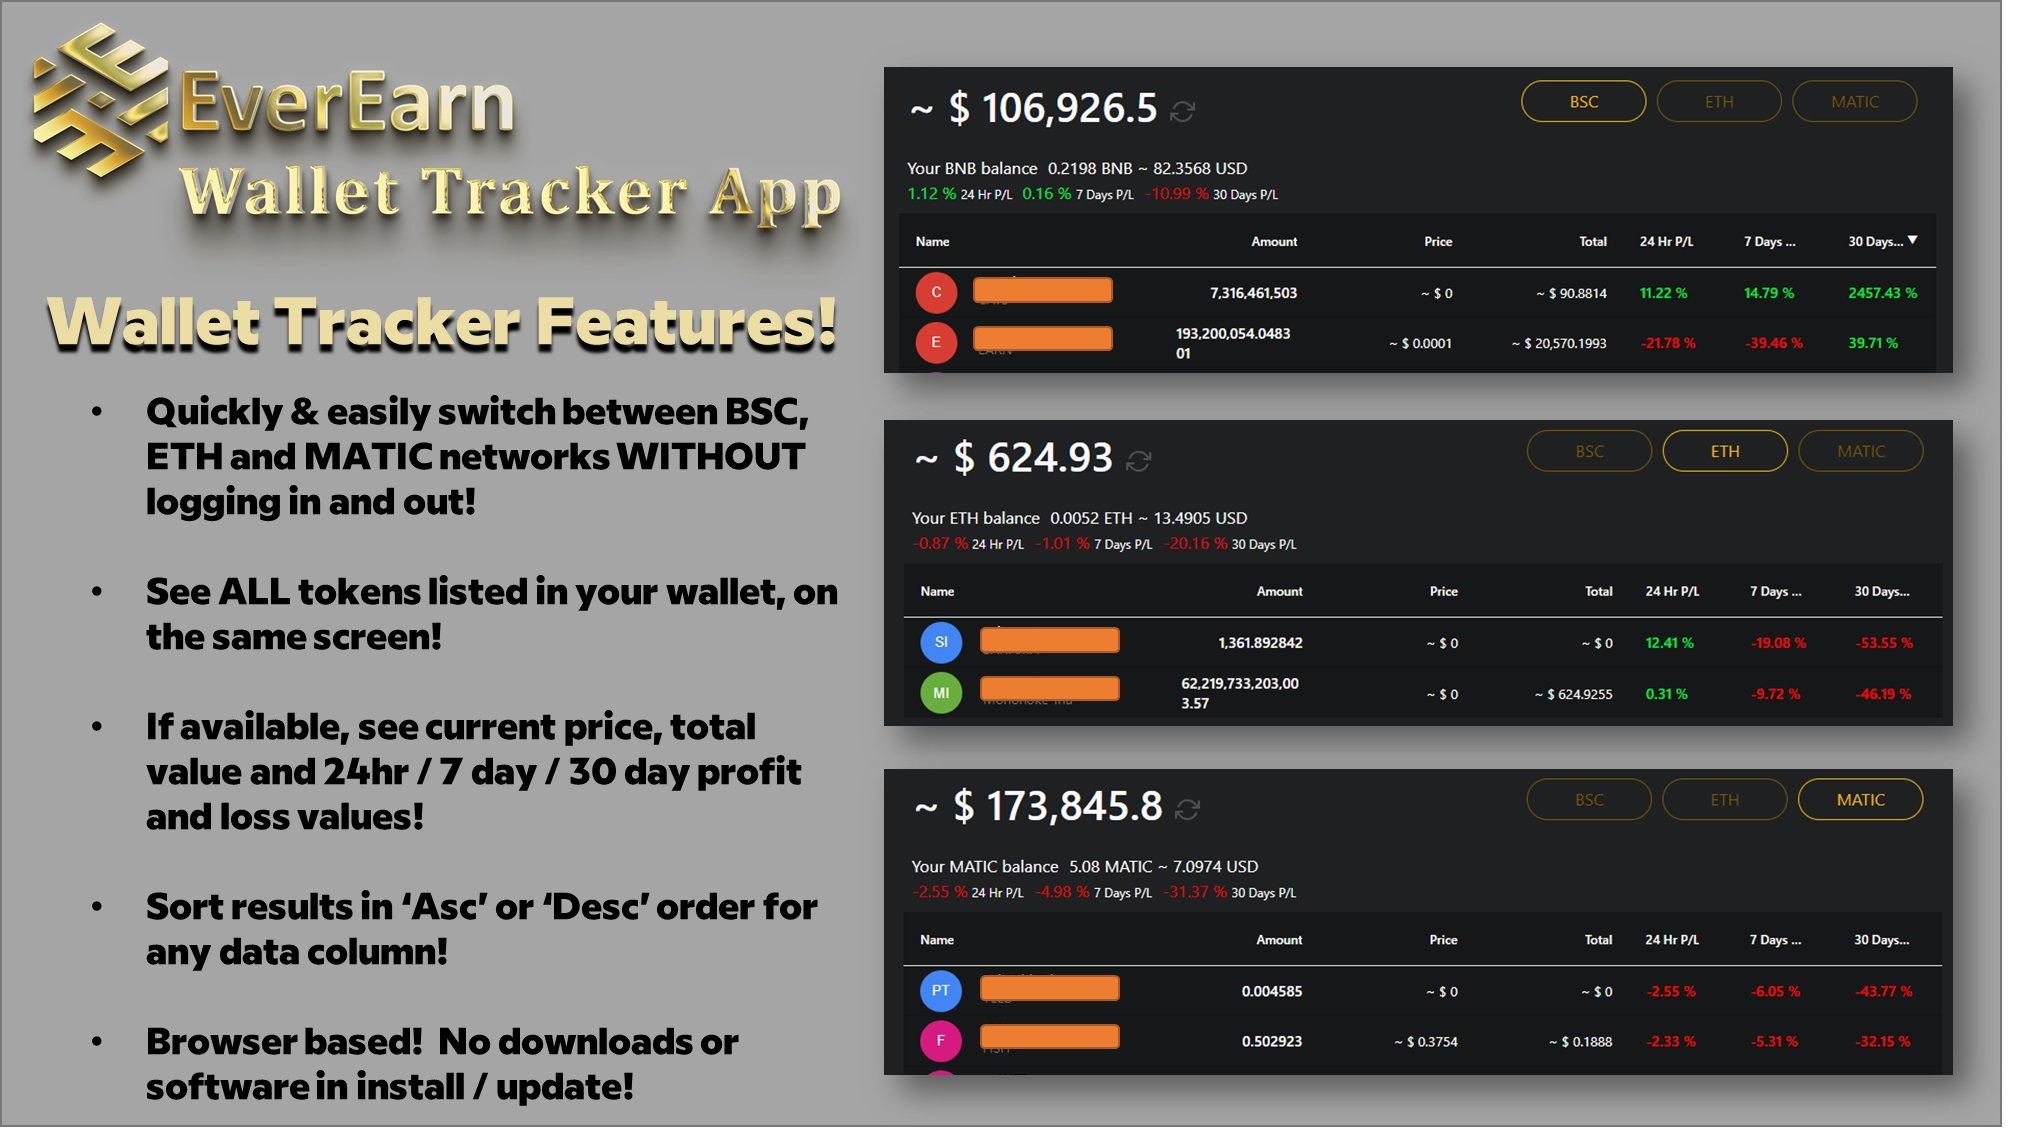 EverEarn Wallet Tracker